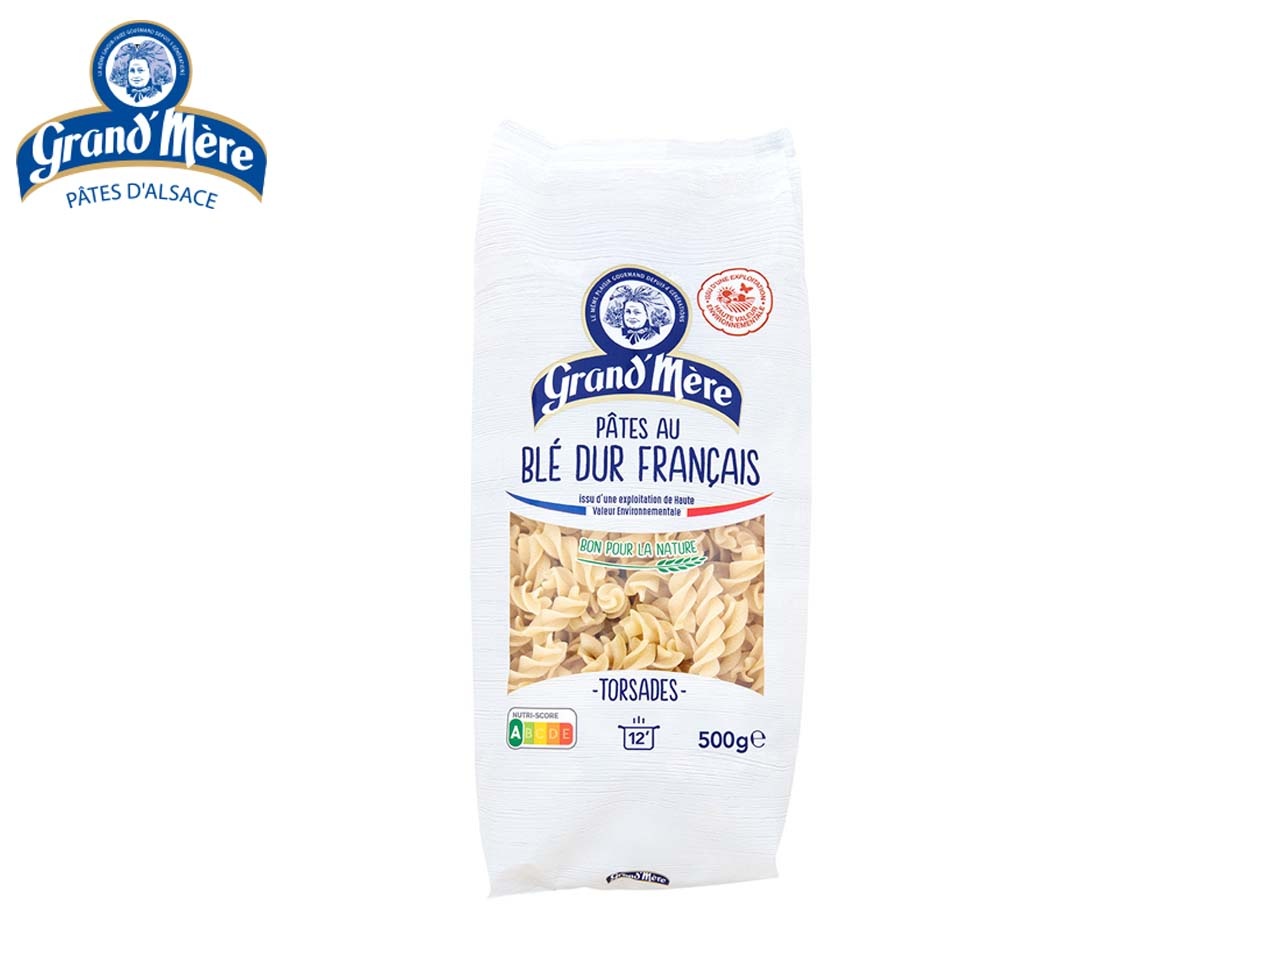 Pâtes Grand’Mère lance une nouvelle gamme de pâtes au blé dur français certifié Haute Valeur Environnementale